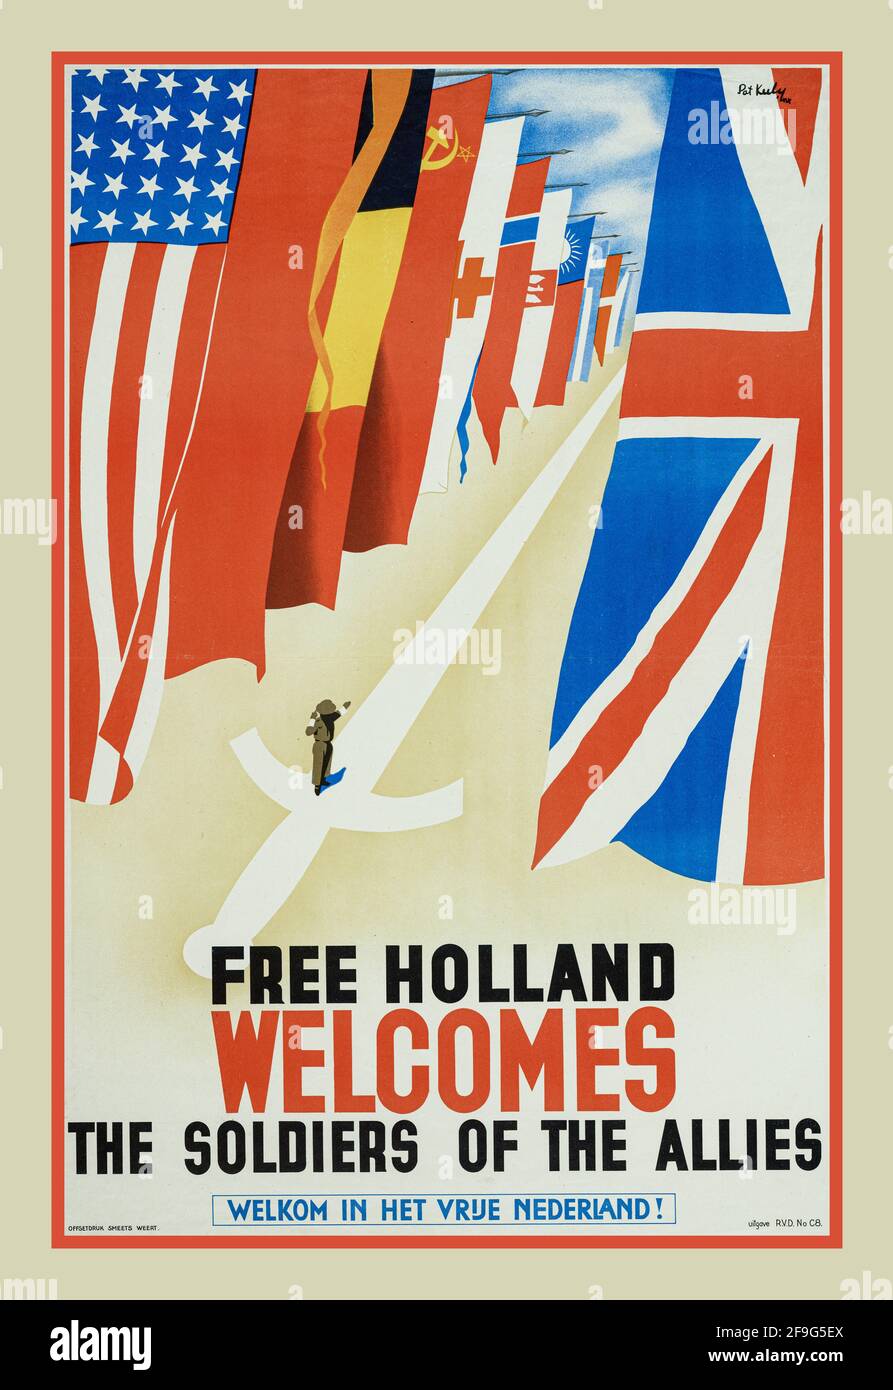 Vintage WW2 Dutch Propaganda Poster 'Free Holland accueille les soldats De la Seconde Guerre mondiale des alliés par Pat Keely 1944 Hollande Nederlands Seconde Guerre mondiale Banque D'Images